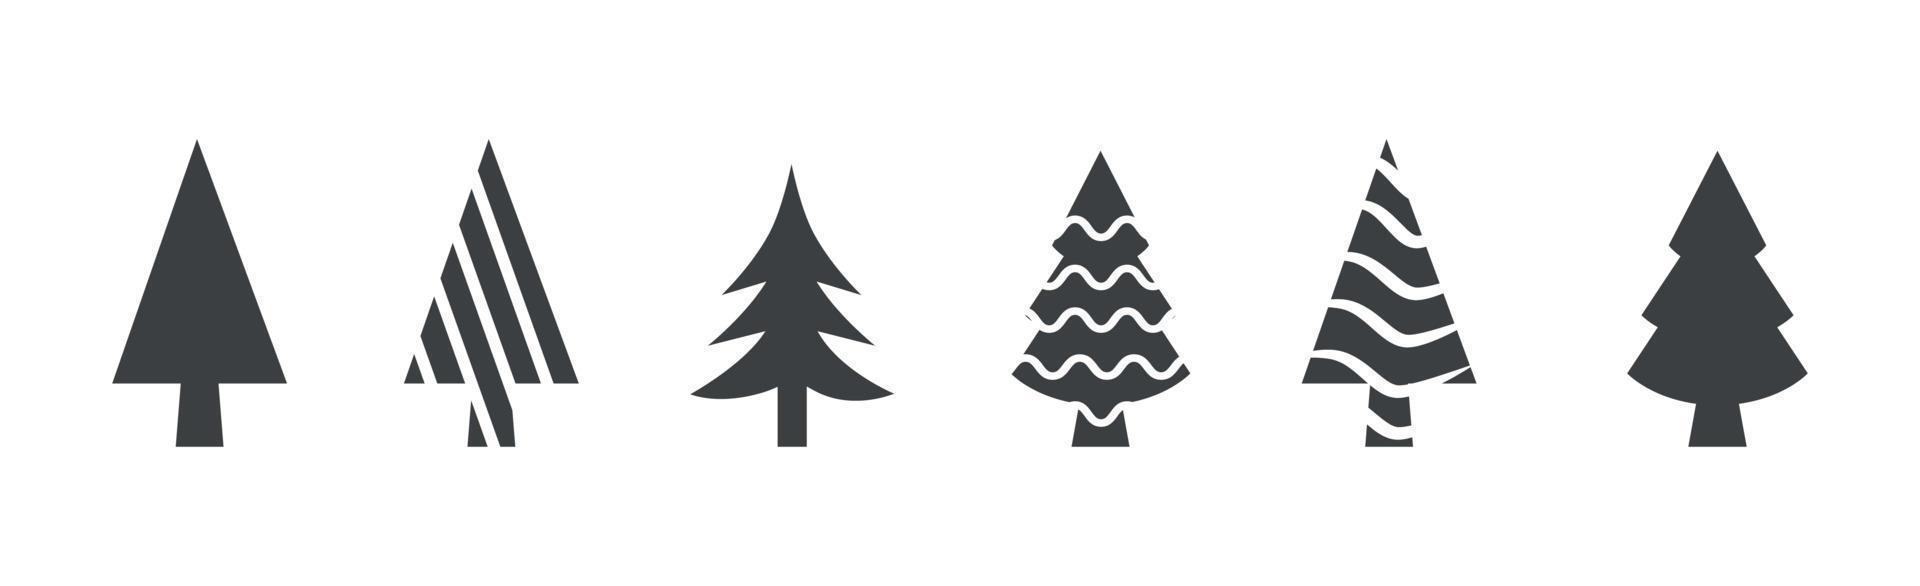 Satz 6-tlg. abstrakte grüne Weihnachtsbäume auf weißem Hintergrund - Vektor